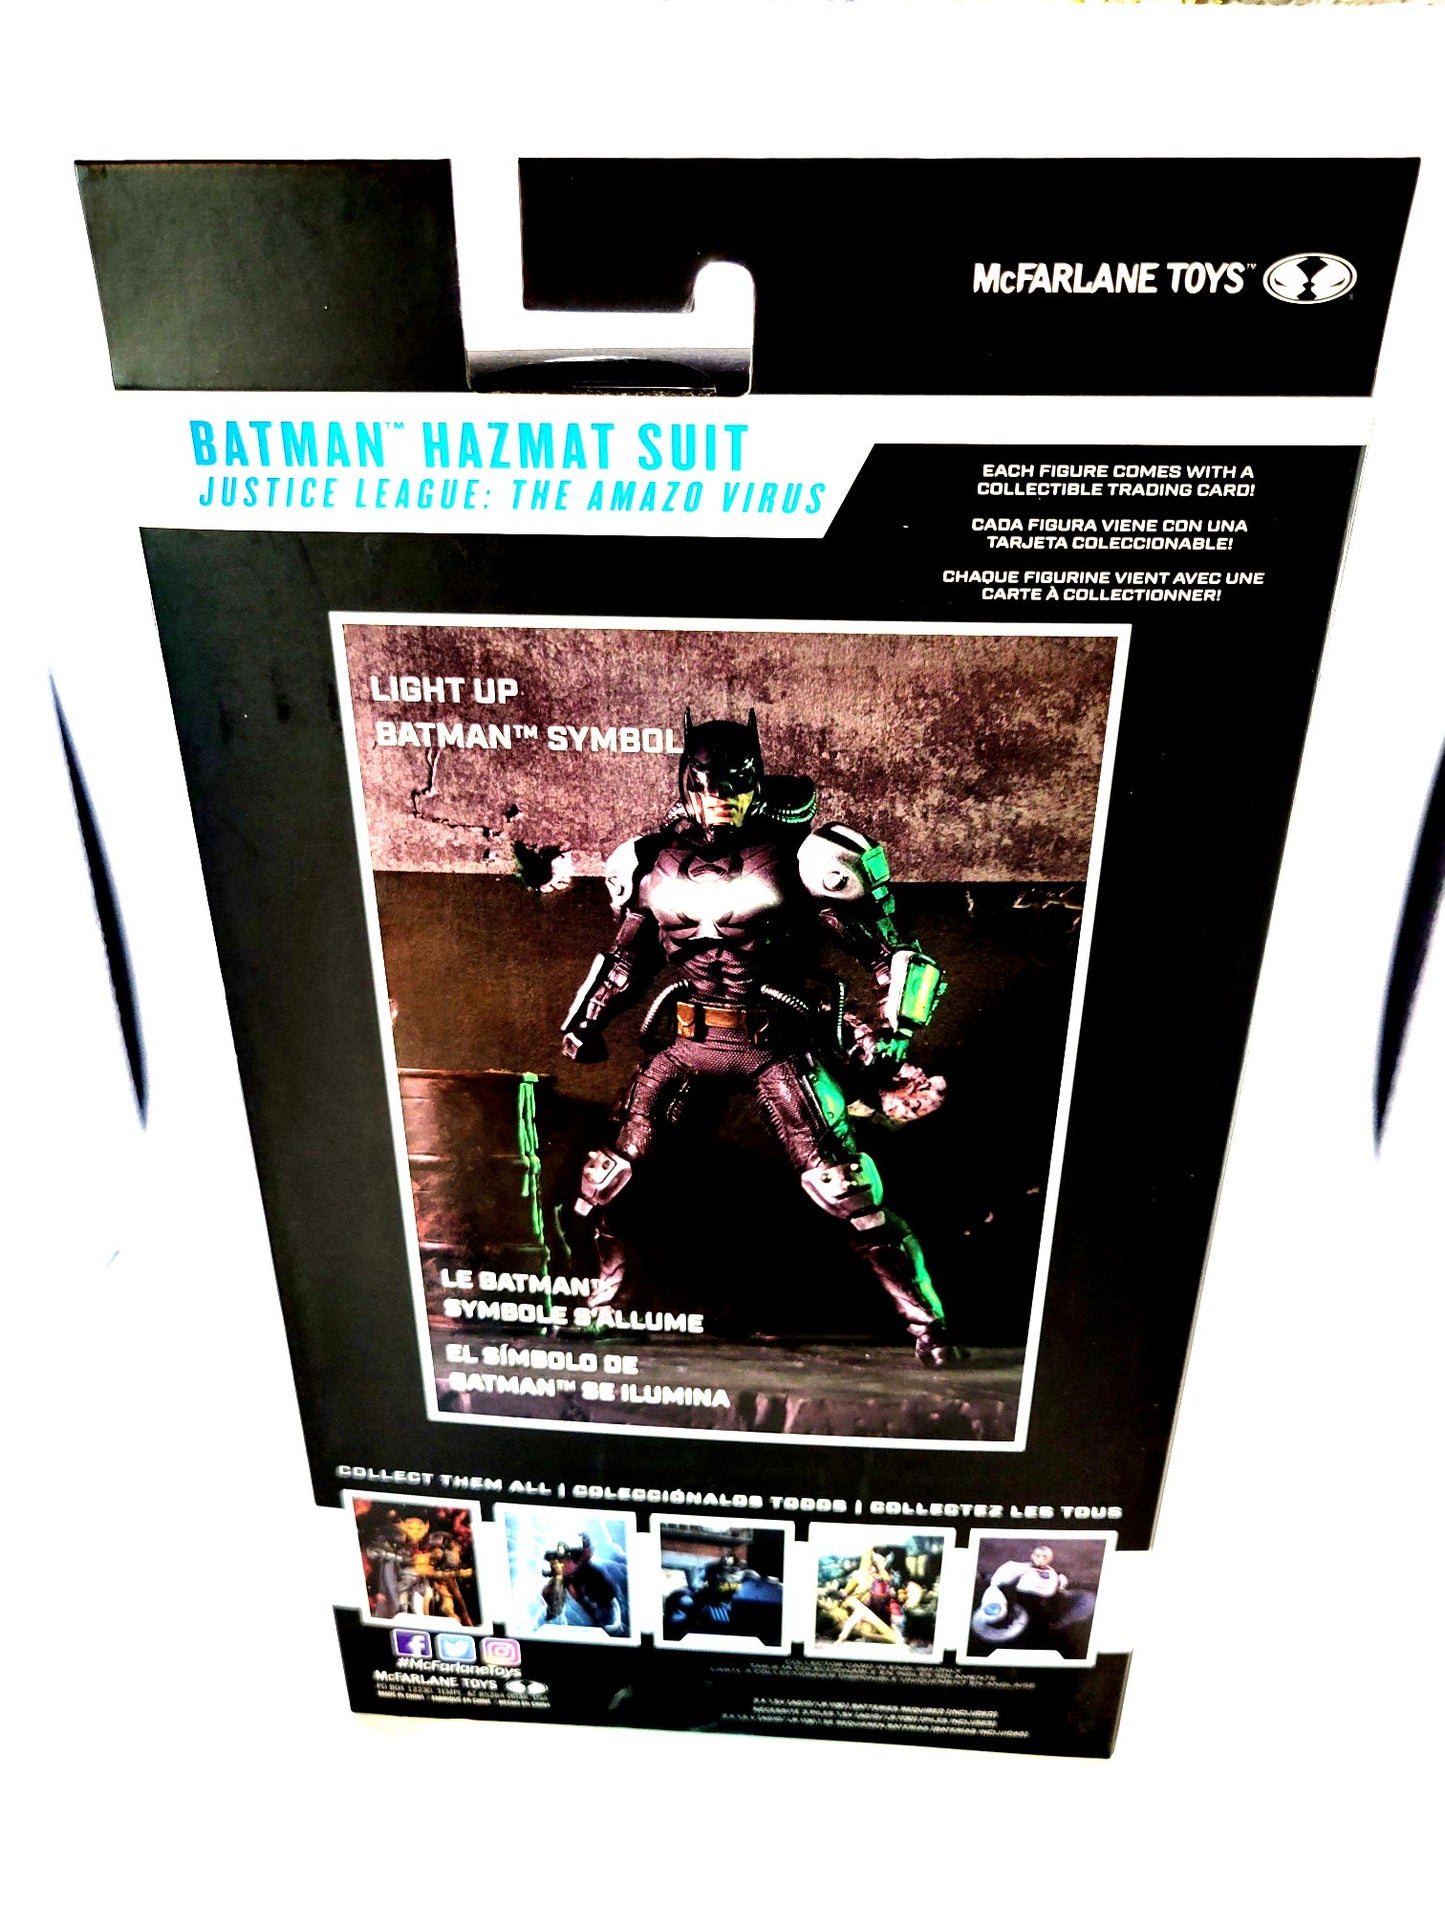 McFarlane Toys Gold Label DC Multiverse Batman: Hazmat Suit Action Figure